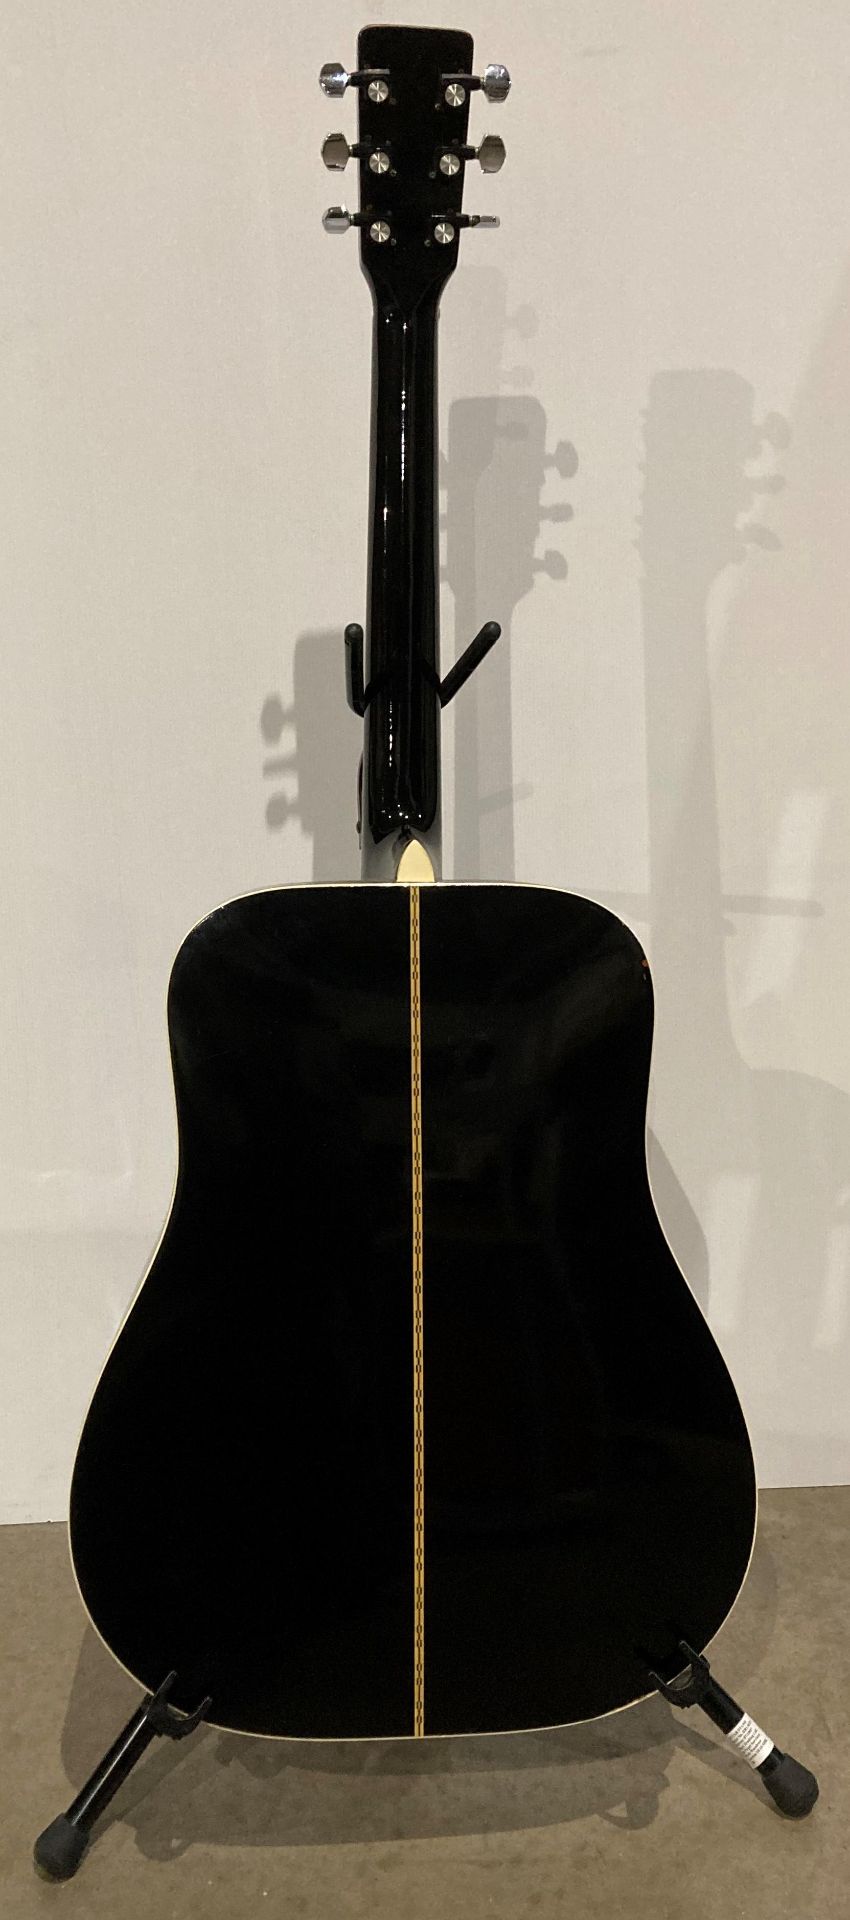 Yasuma Newance Custom W250 acoustic guitar (Saleroom location: S3) - Image 4 of 4